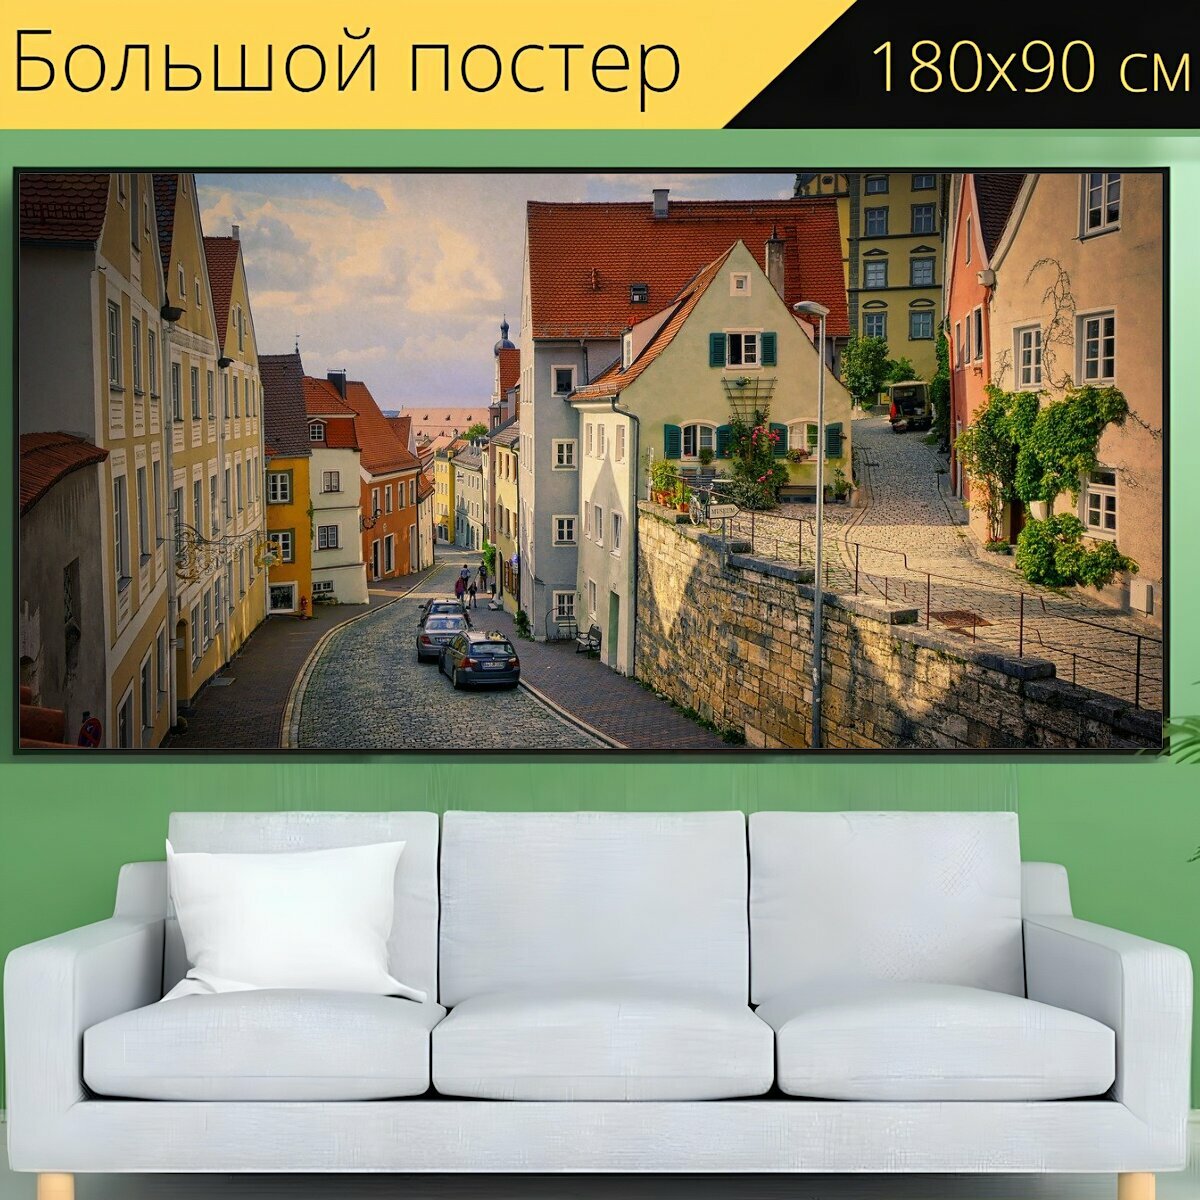 Большой постер "Аллея старый город дома" 180 x 90 см. для интерьера